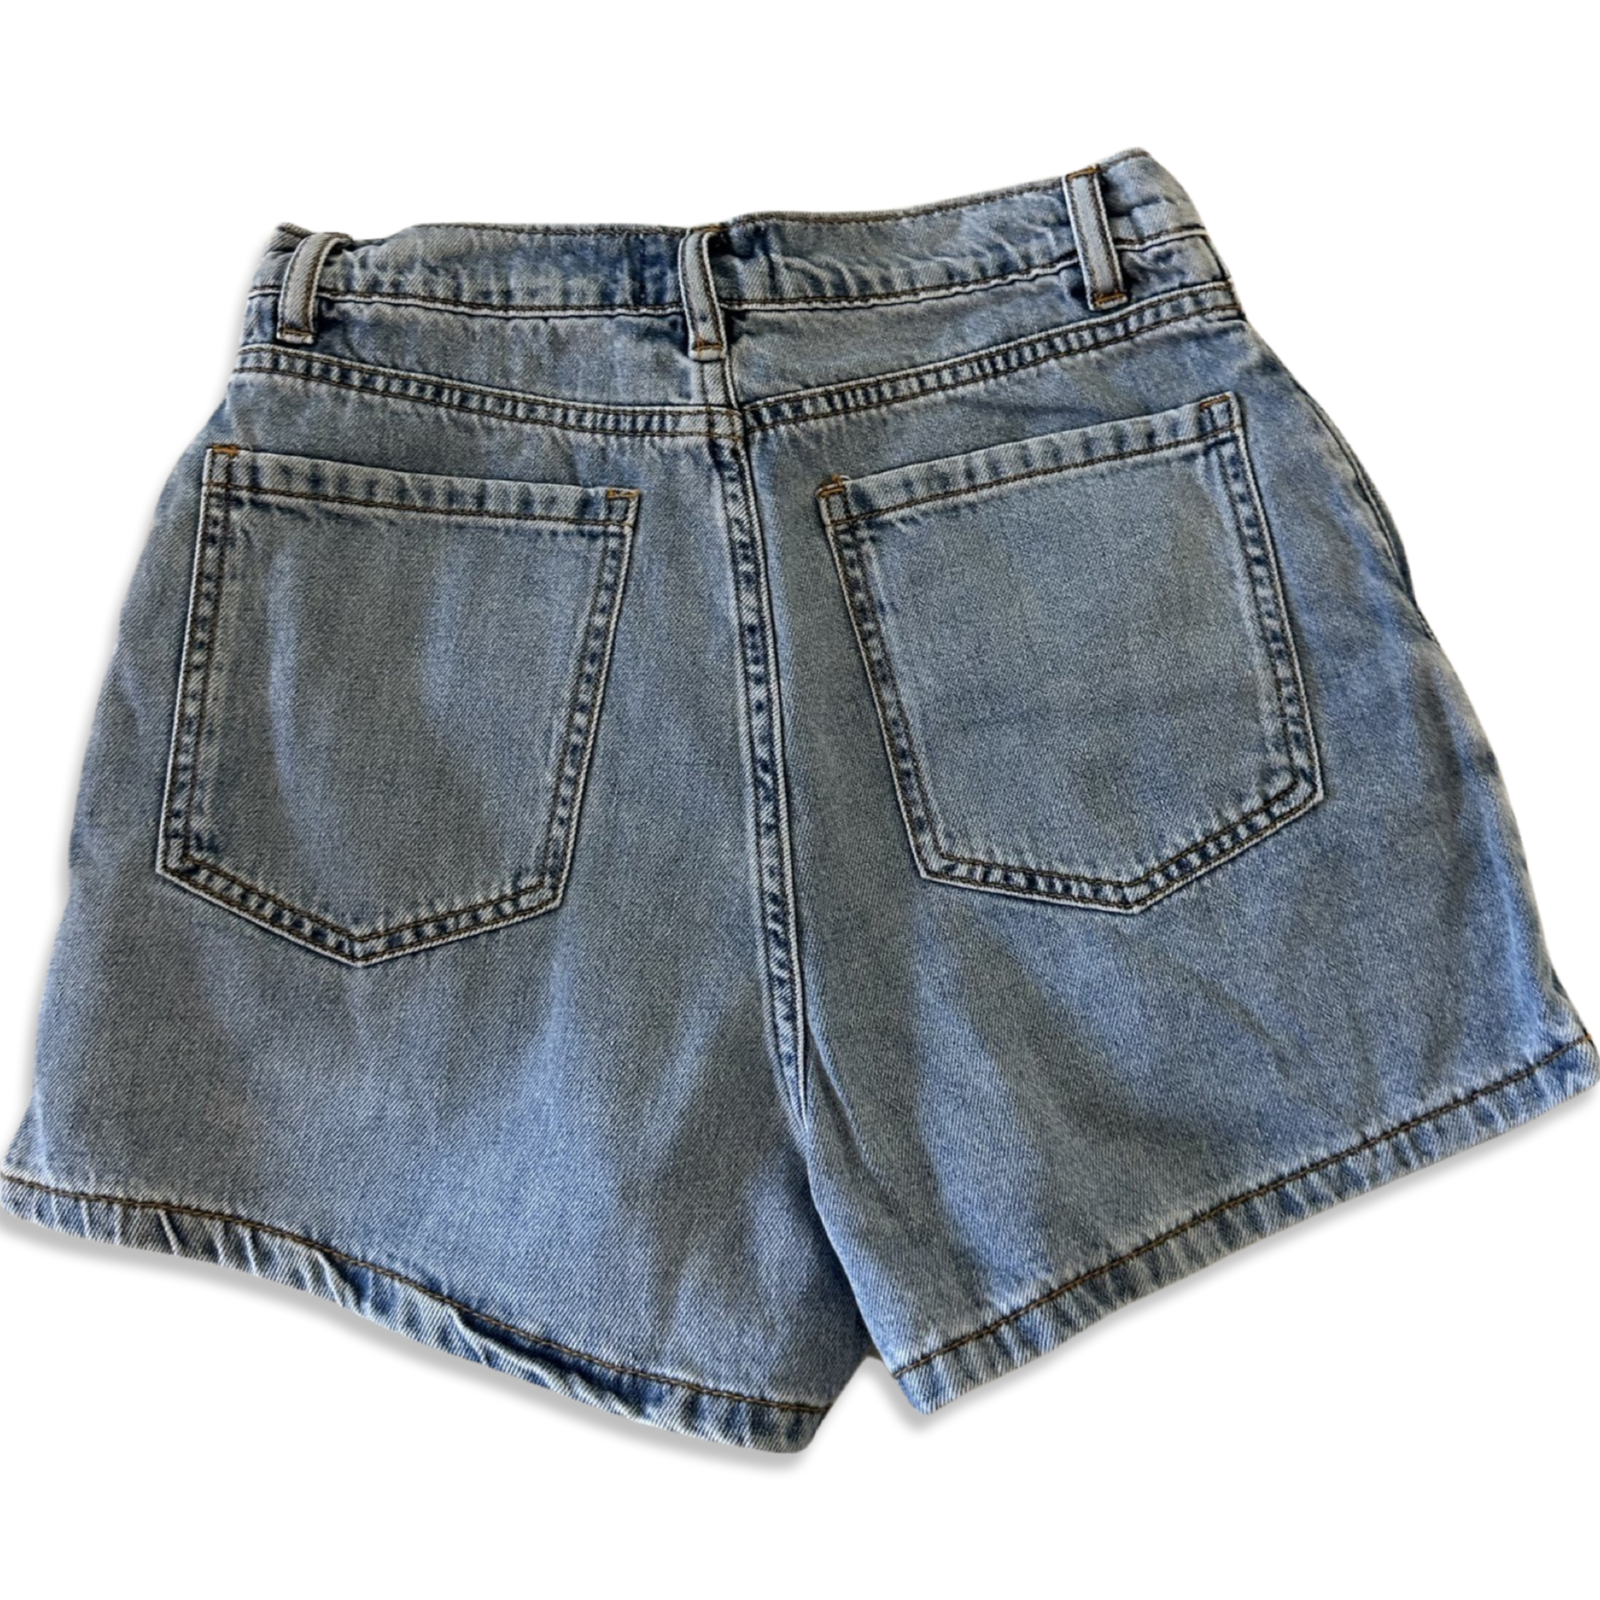 Mini denim cargo skirt-short